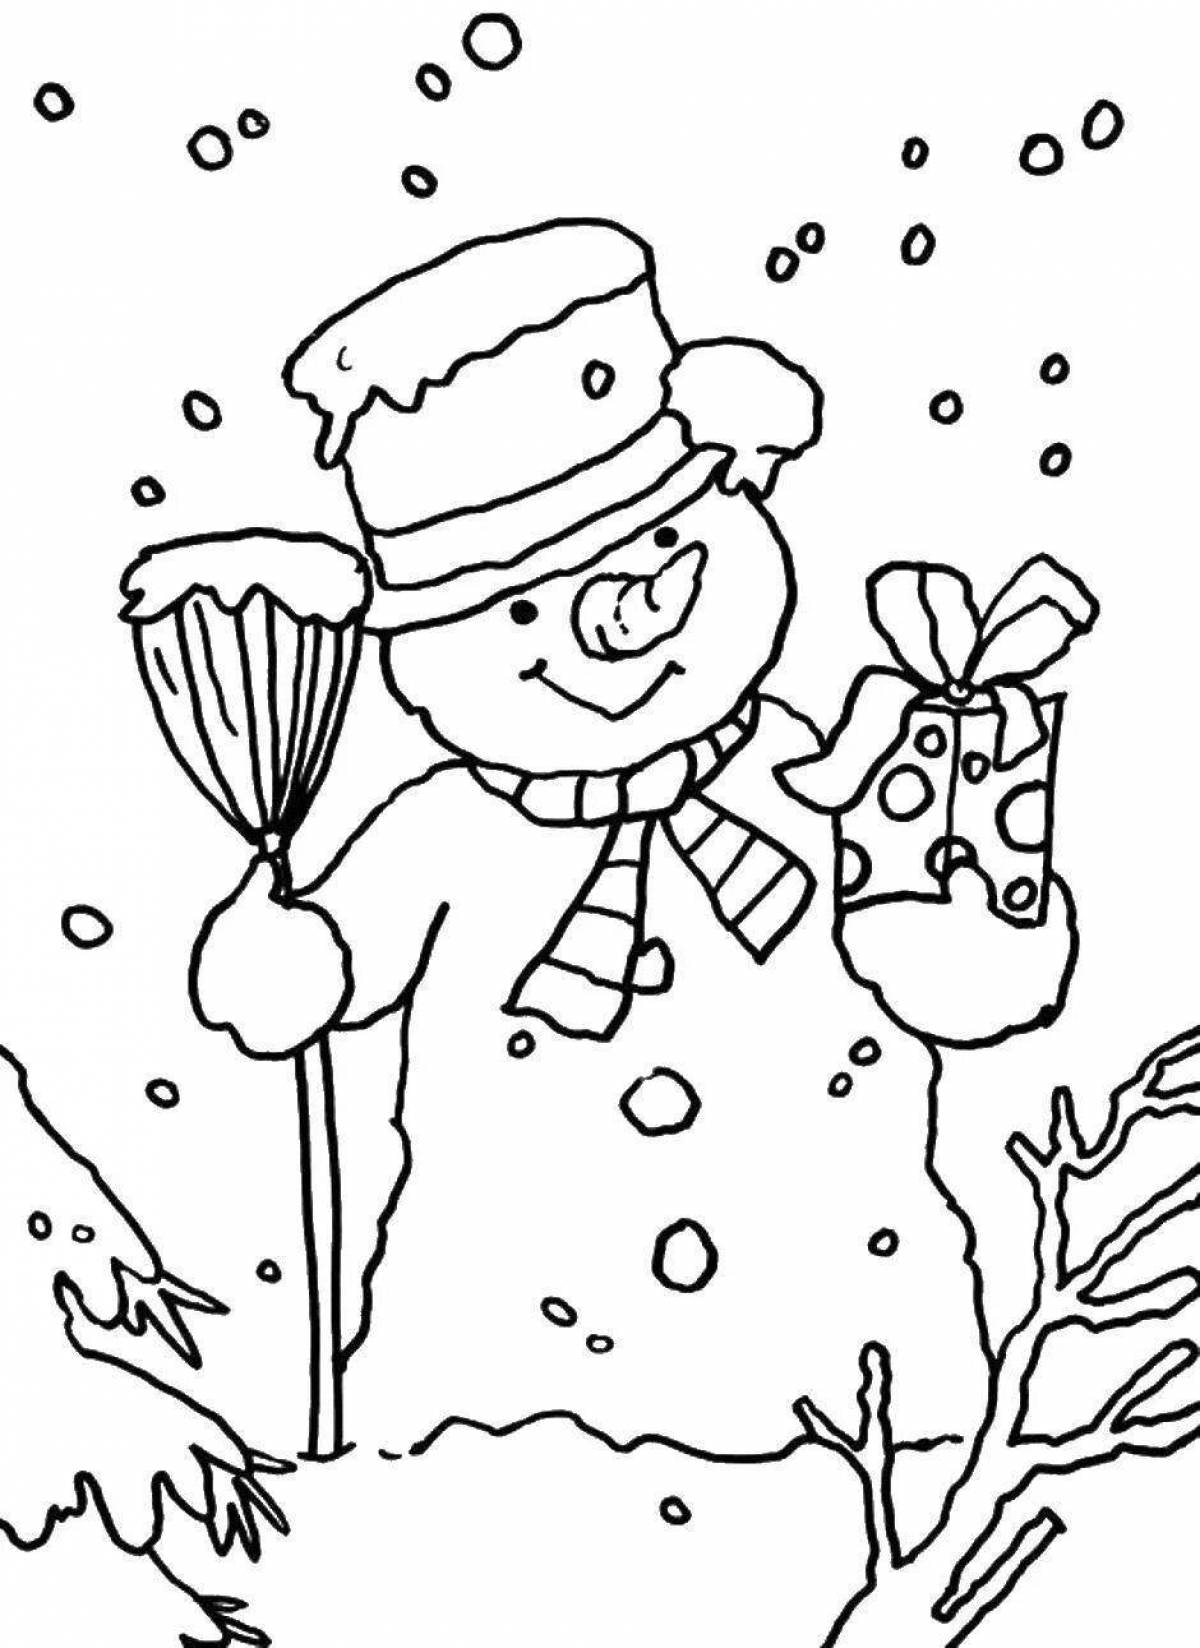 Раскрасим снег. Снеговик раскраска. Снеговик раскраска для детей. Раскраска зима. Зимние раскраски Снеговик.